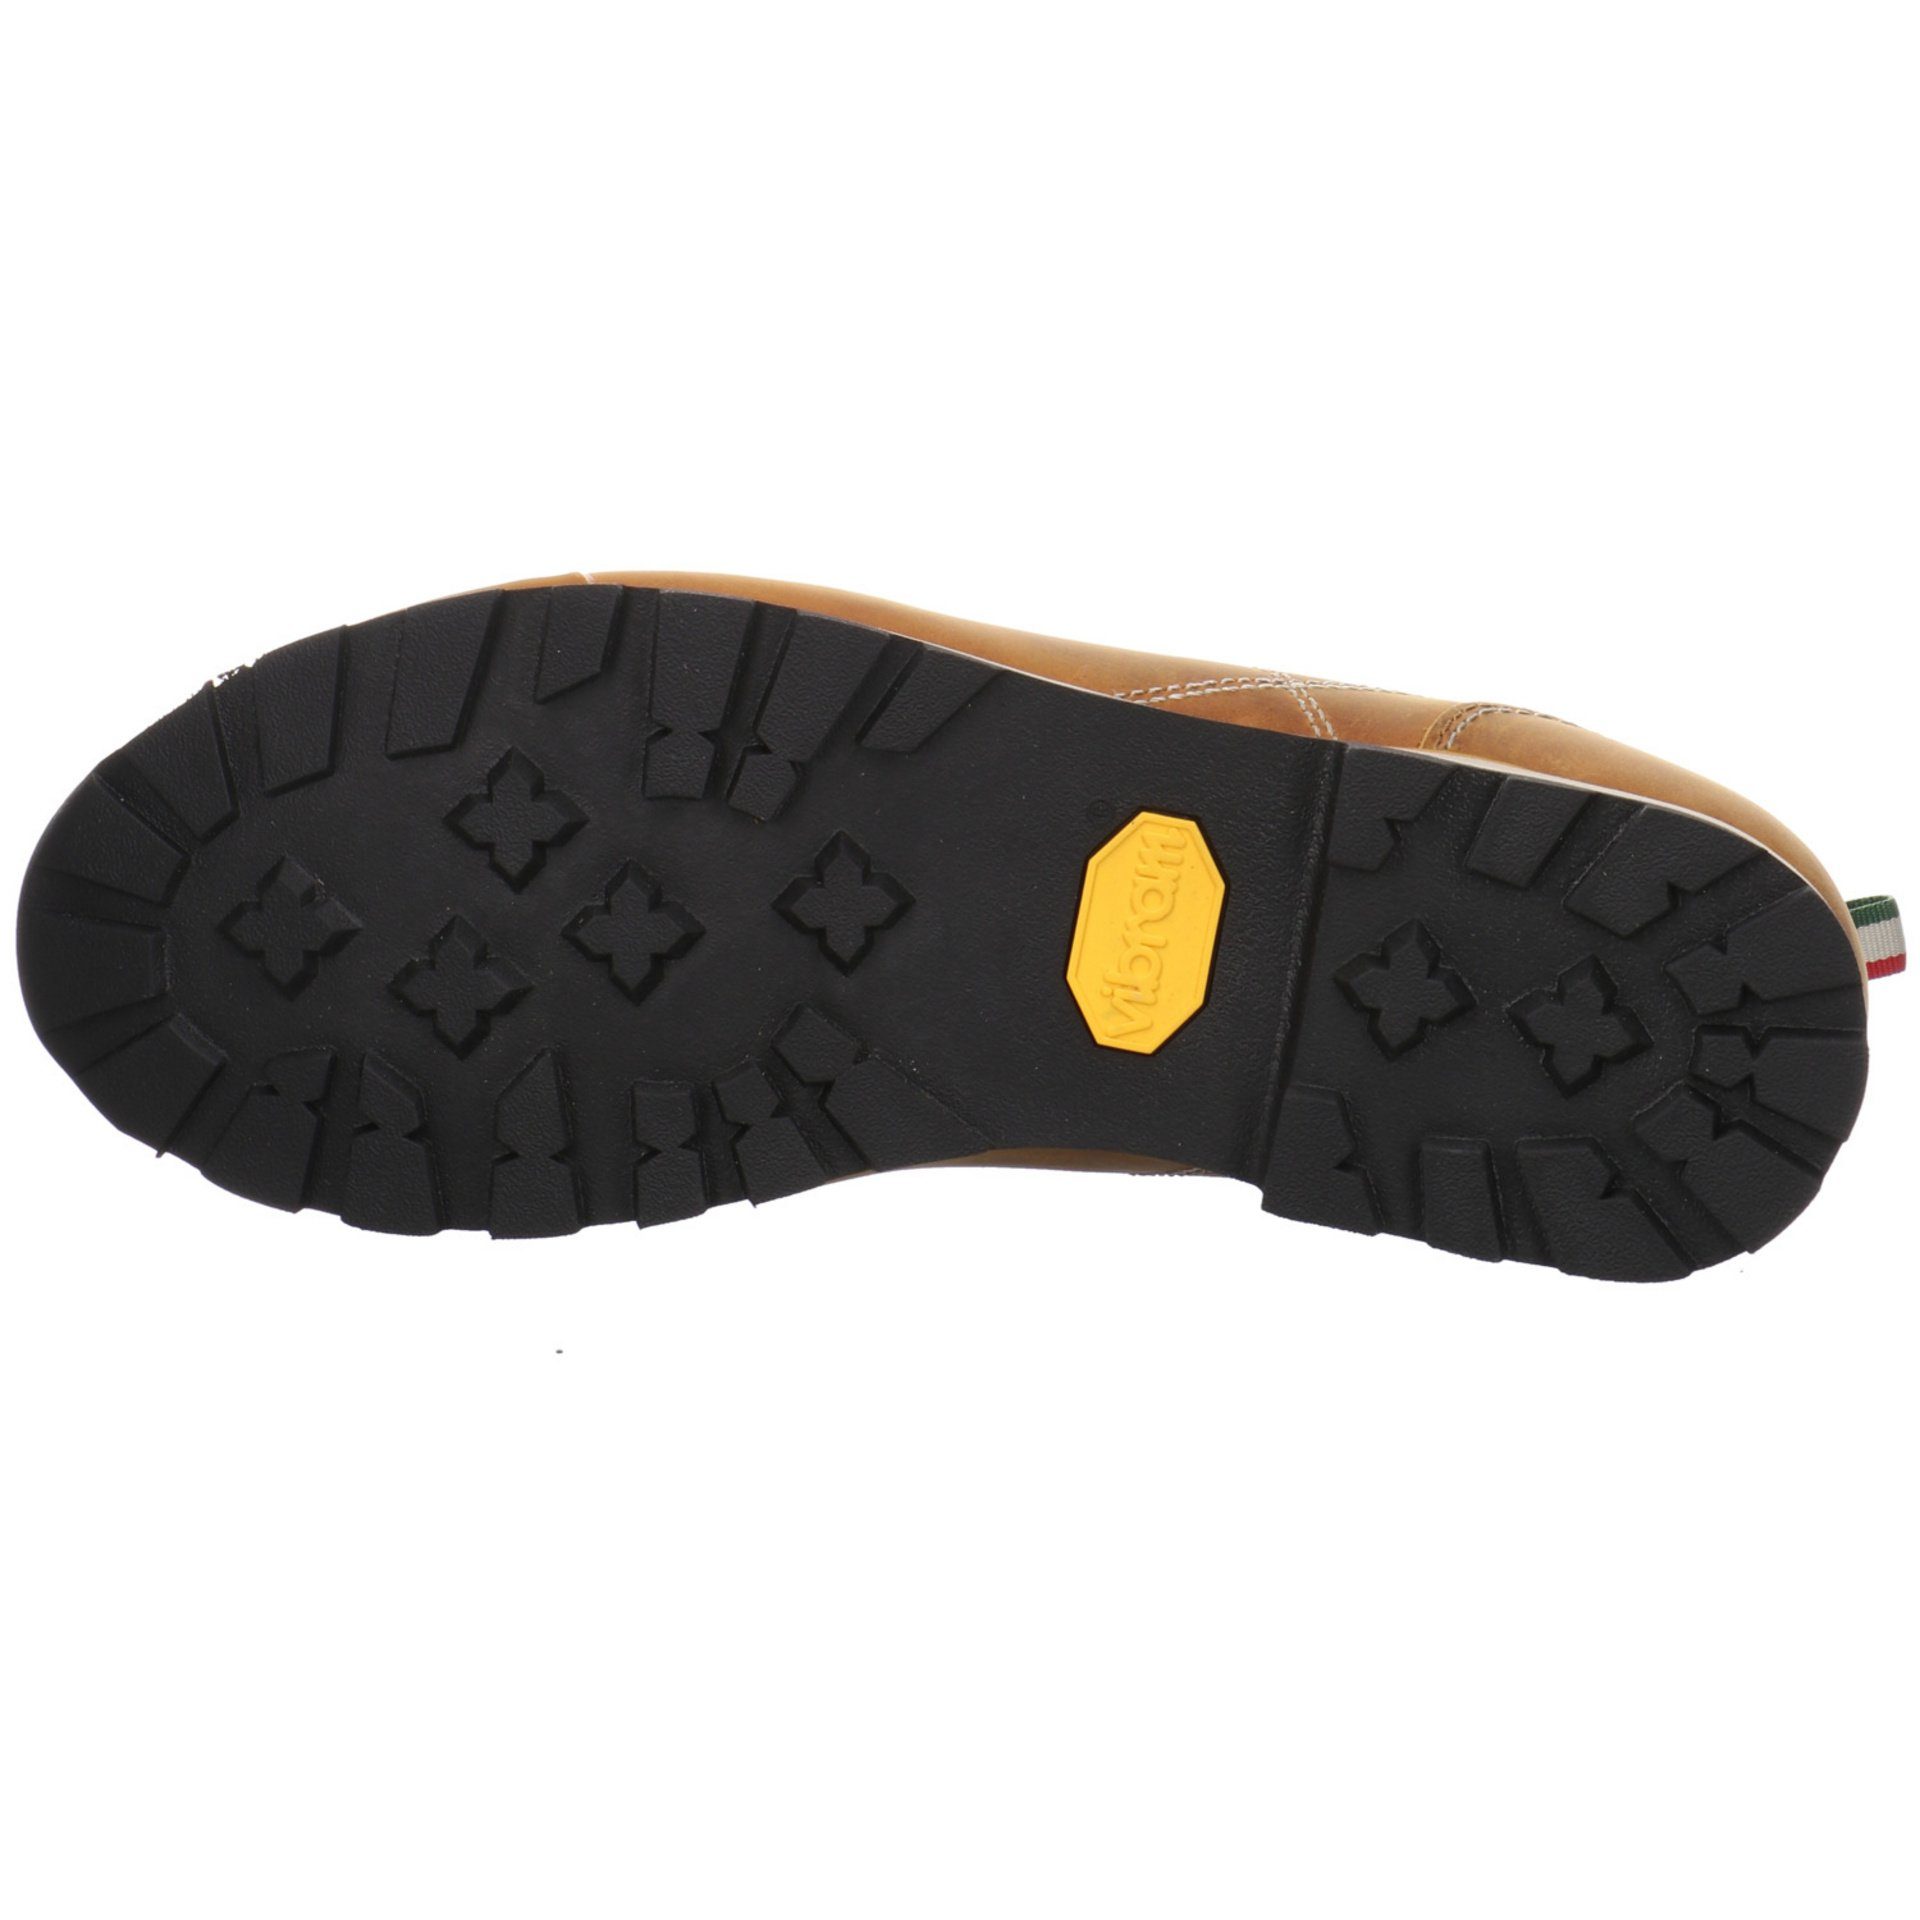 Dolomite Herren Outdoor Schuhe 54 Mid Fettleder Yellow Evo FG Golden Outdoorschuh Outdoorschuh